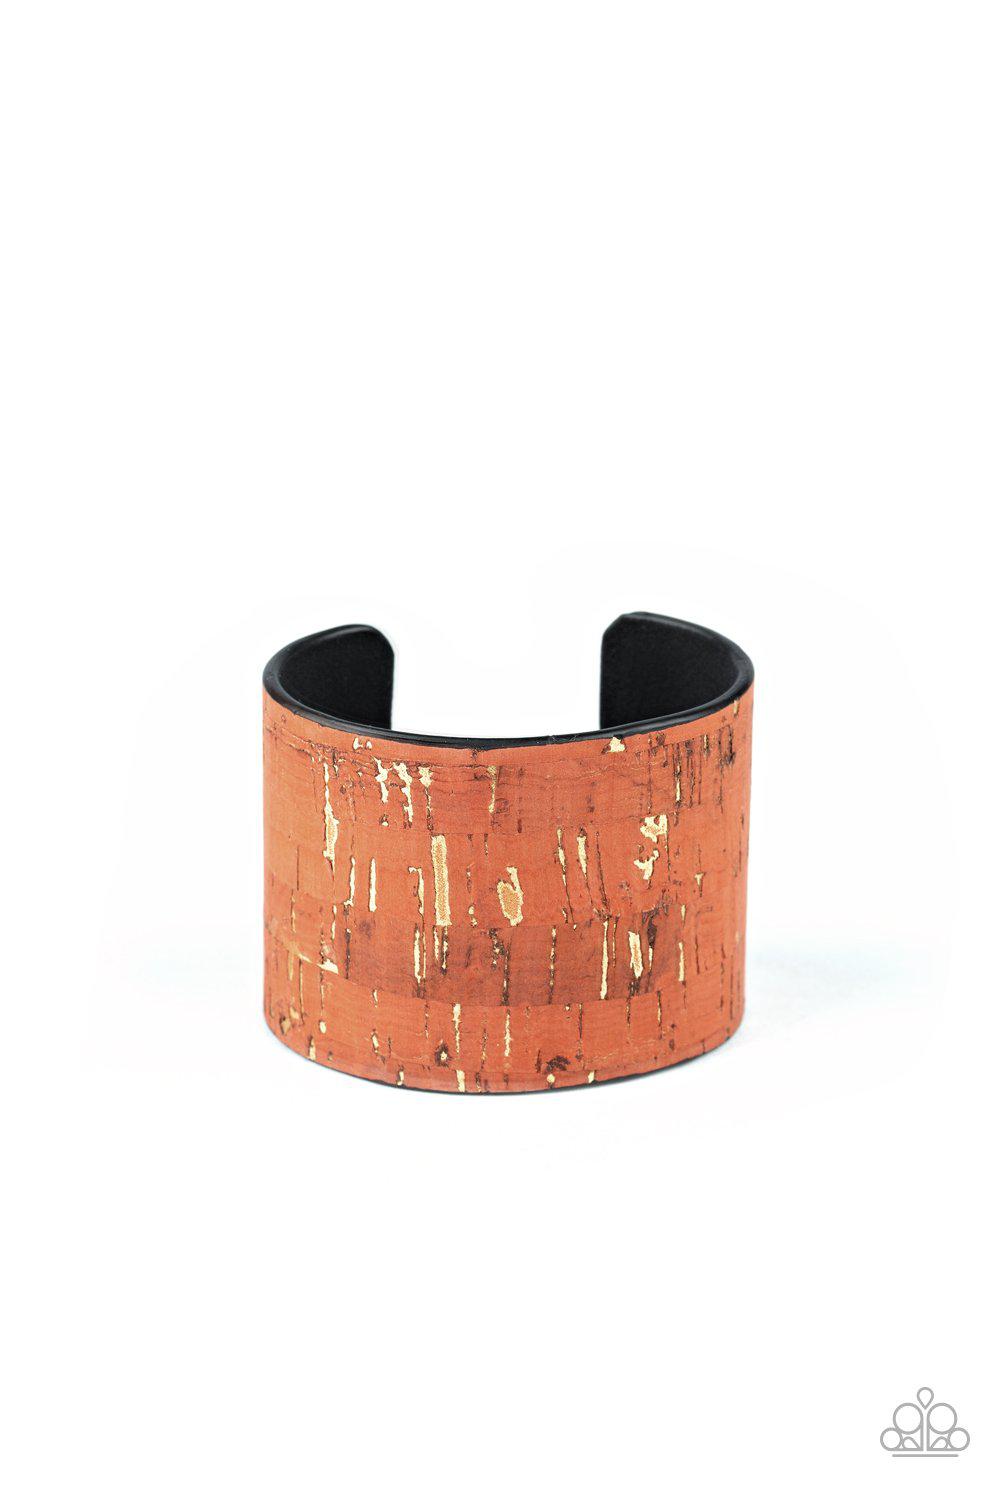 Up To Scratch Orange Cork Cuff Bracelet - Paparazzi Accessories-CarasShop.com - $5 Jewelry by Cara Jewels